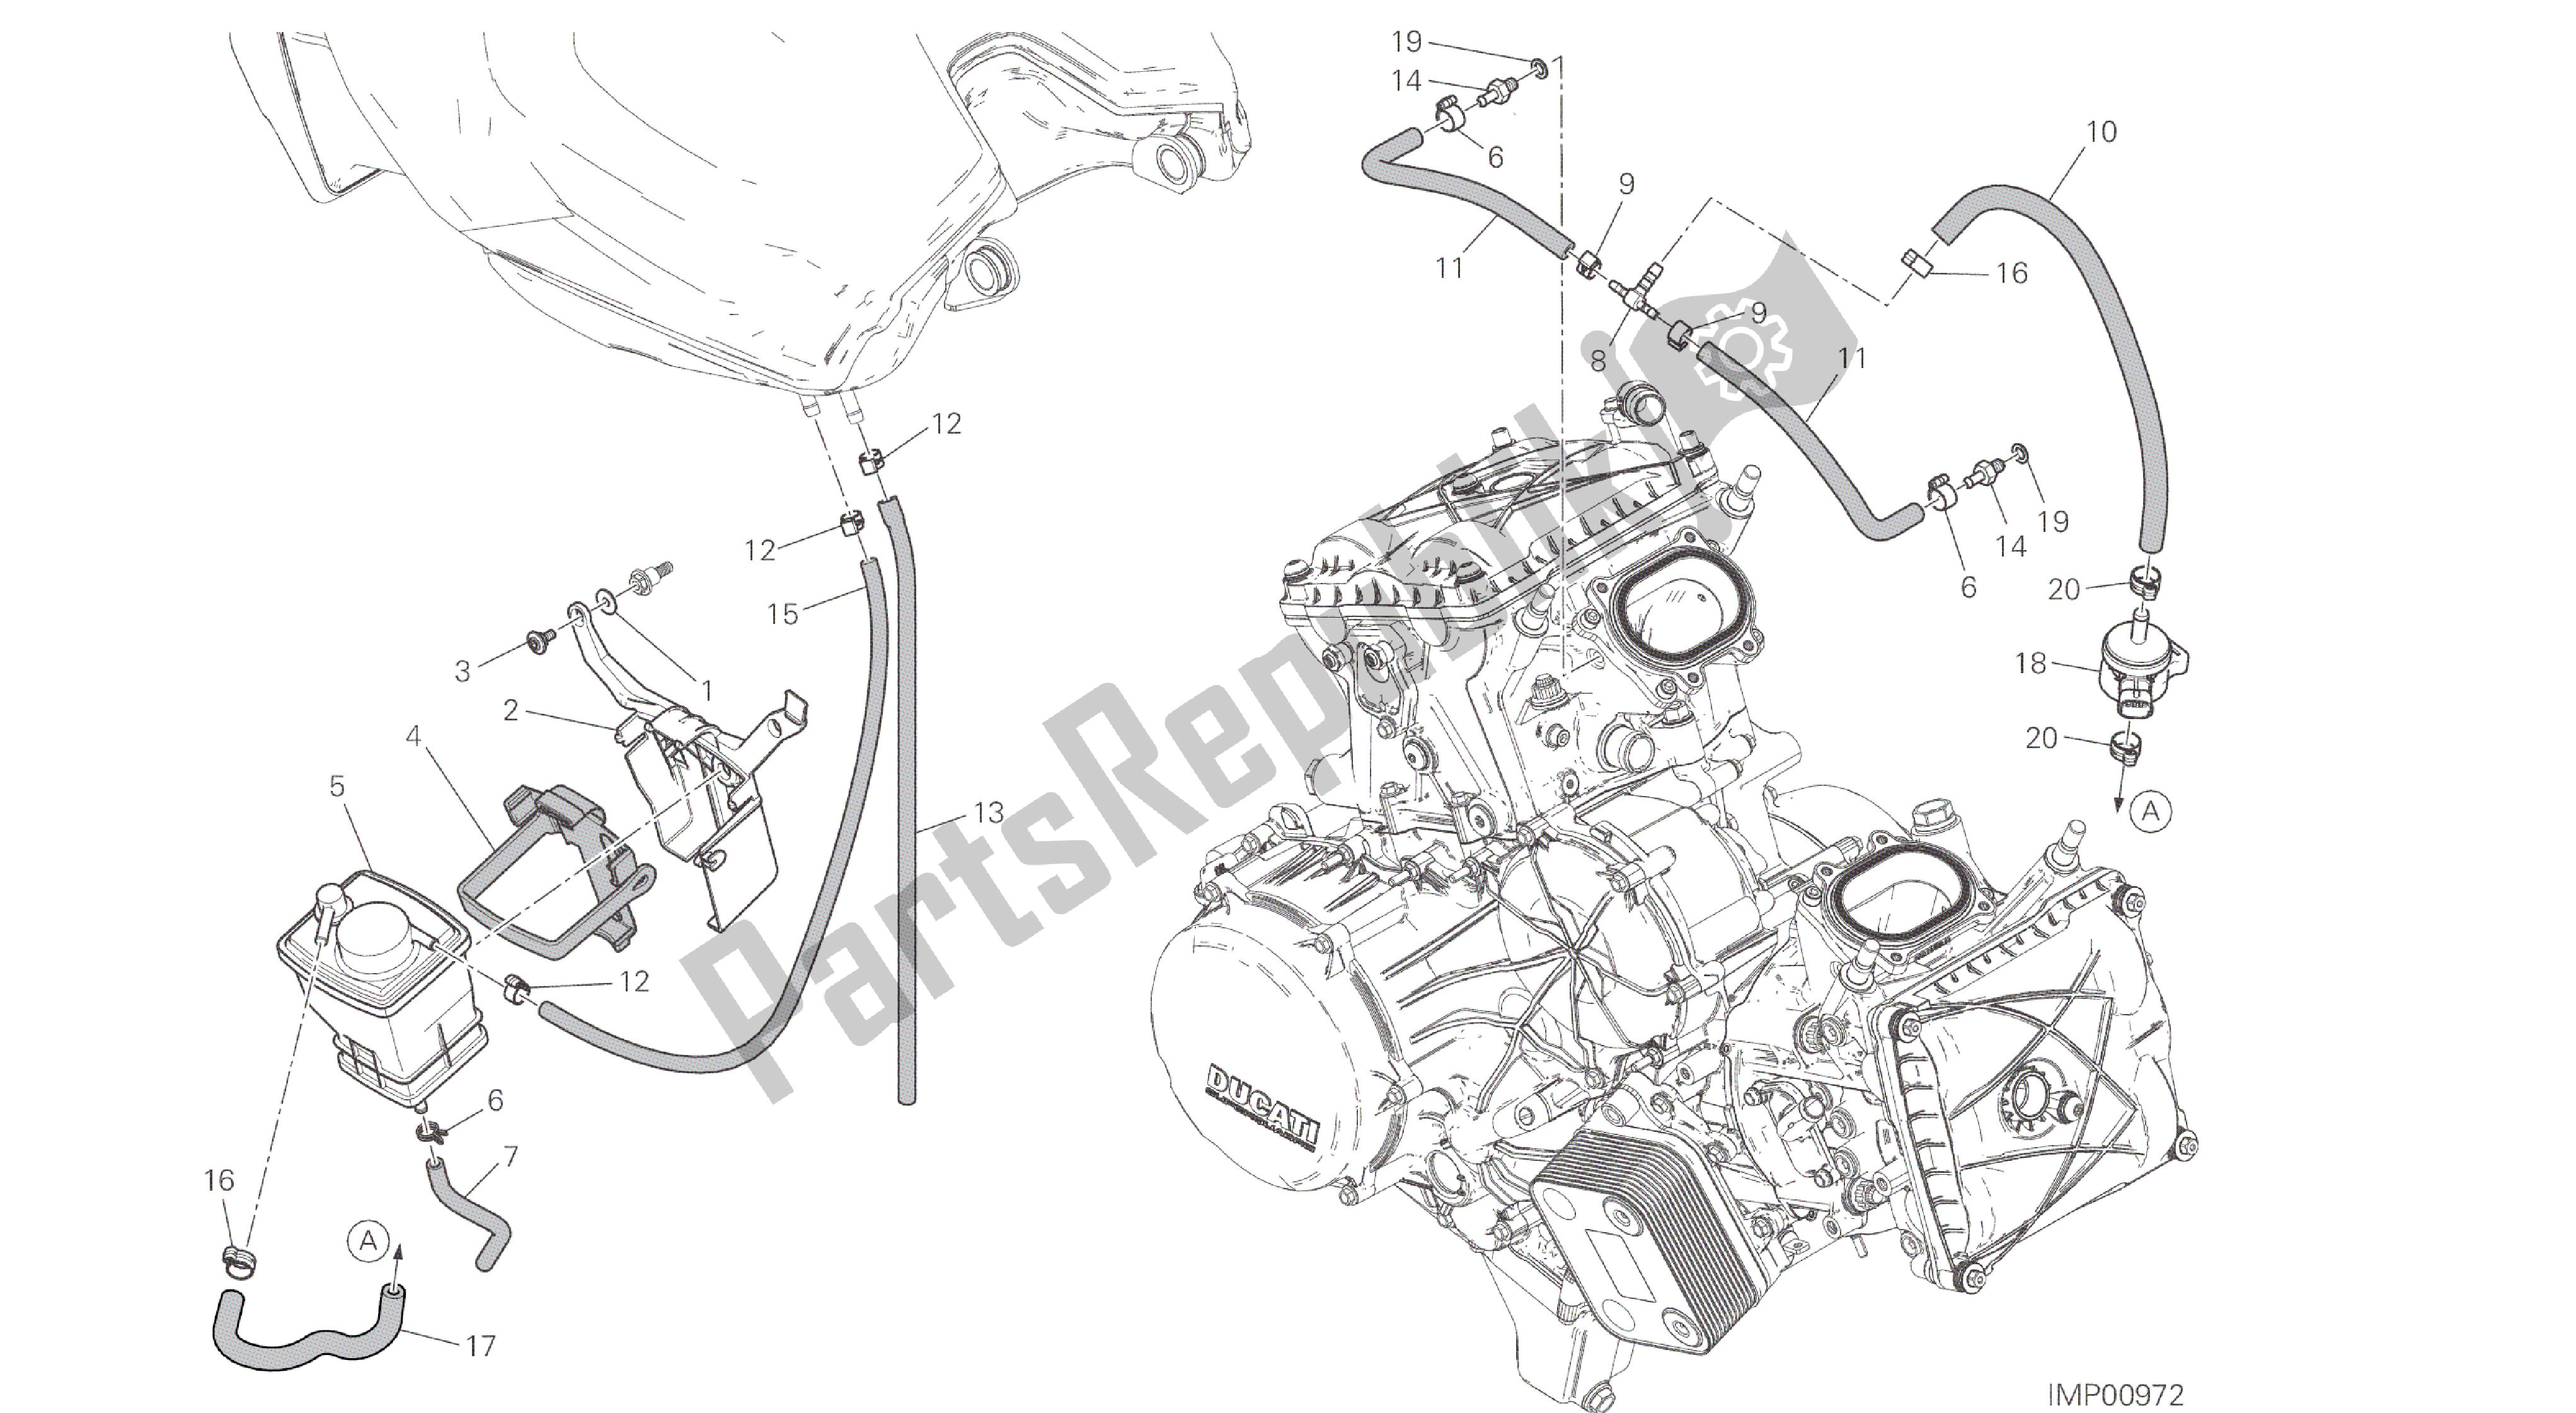 Alle onderdelen voor de Tekening 035 - Busfilter [mod: 959,959 Aws] Groepsframe van de Ducati Panigale 959 2016